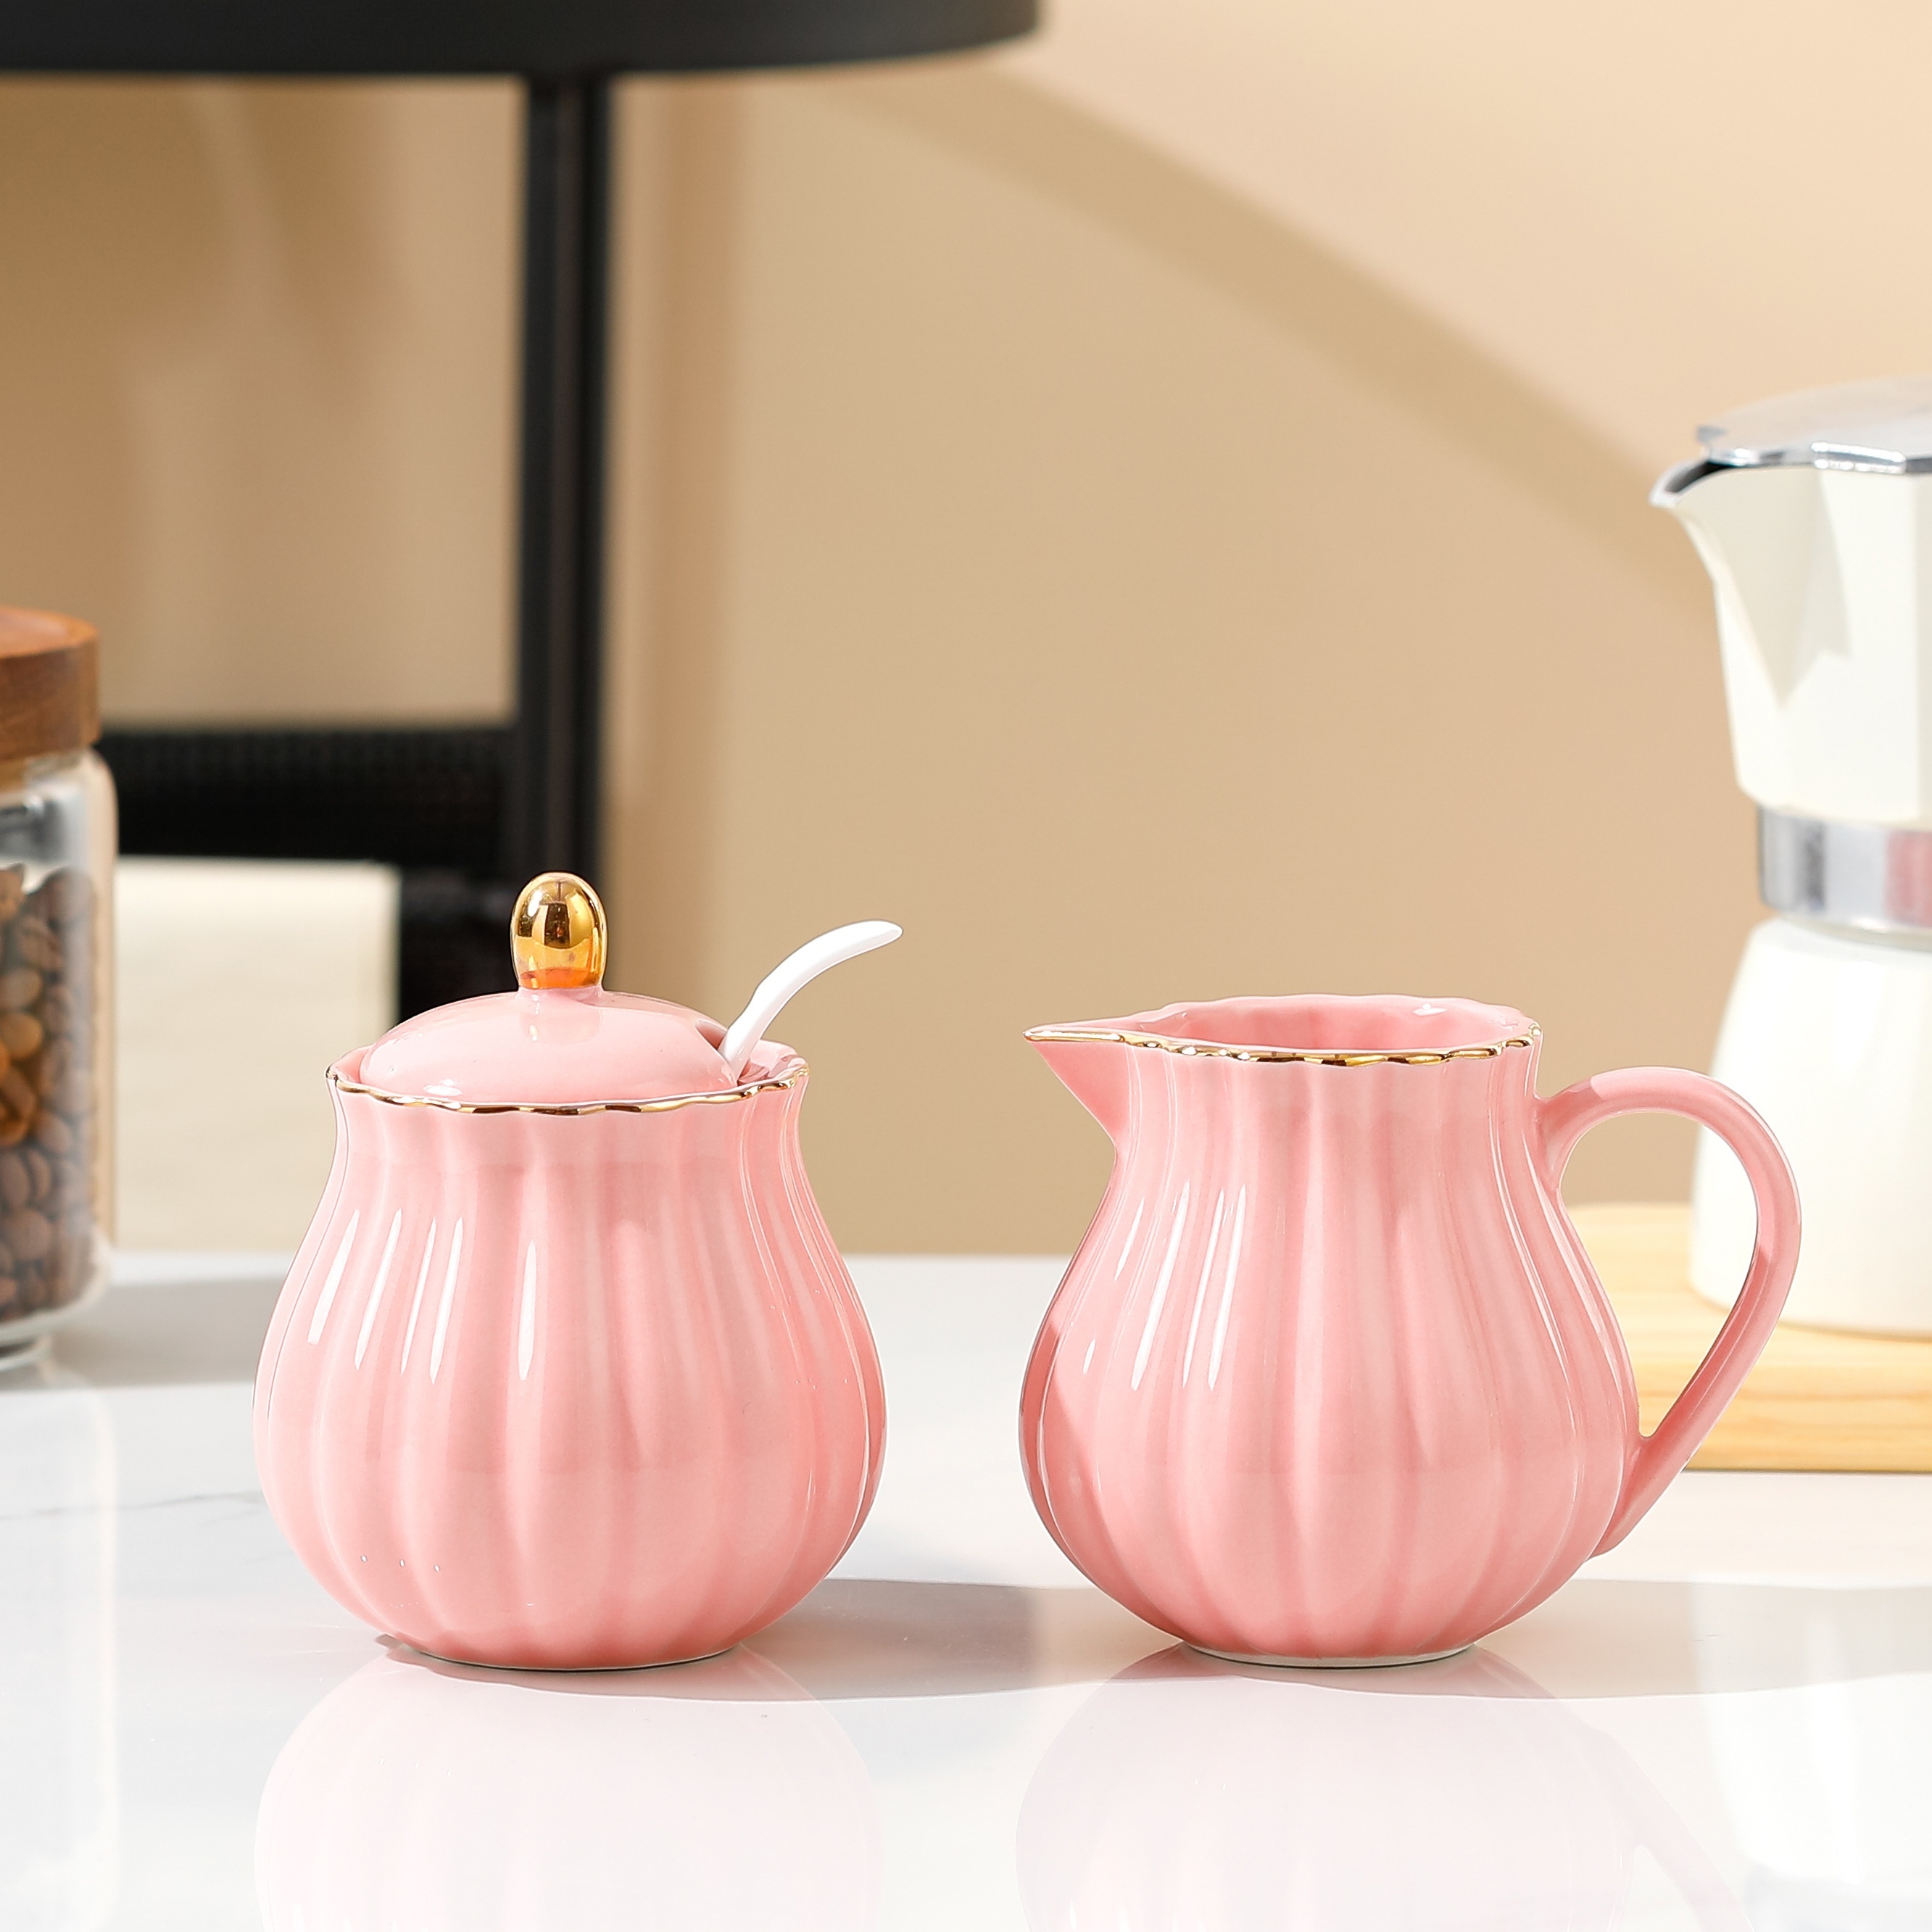 Sweejar Royal Ceramic - Juego de azúcar y crema de cerámica, juego de 3  piezas con jarra de crema, azucarero, juego de azúcar con tapa y cuchara